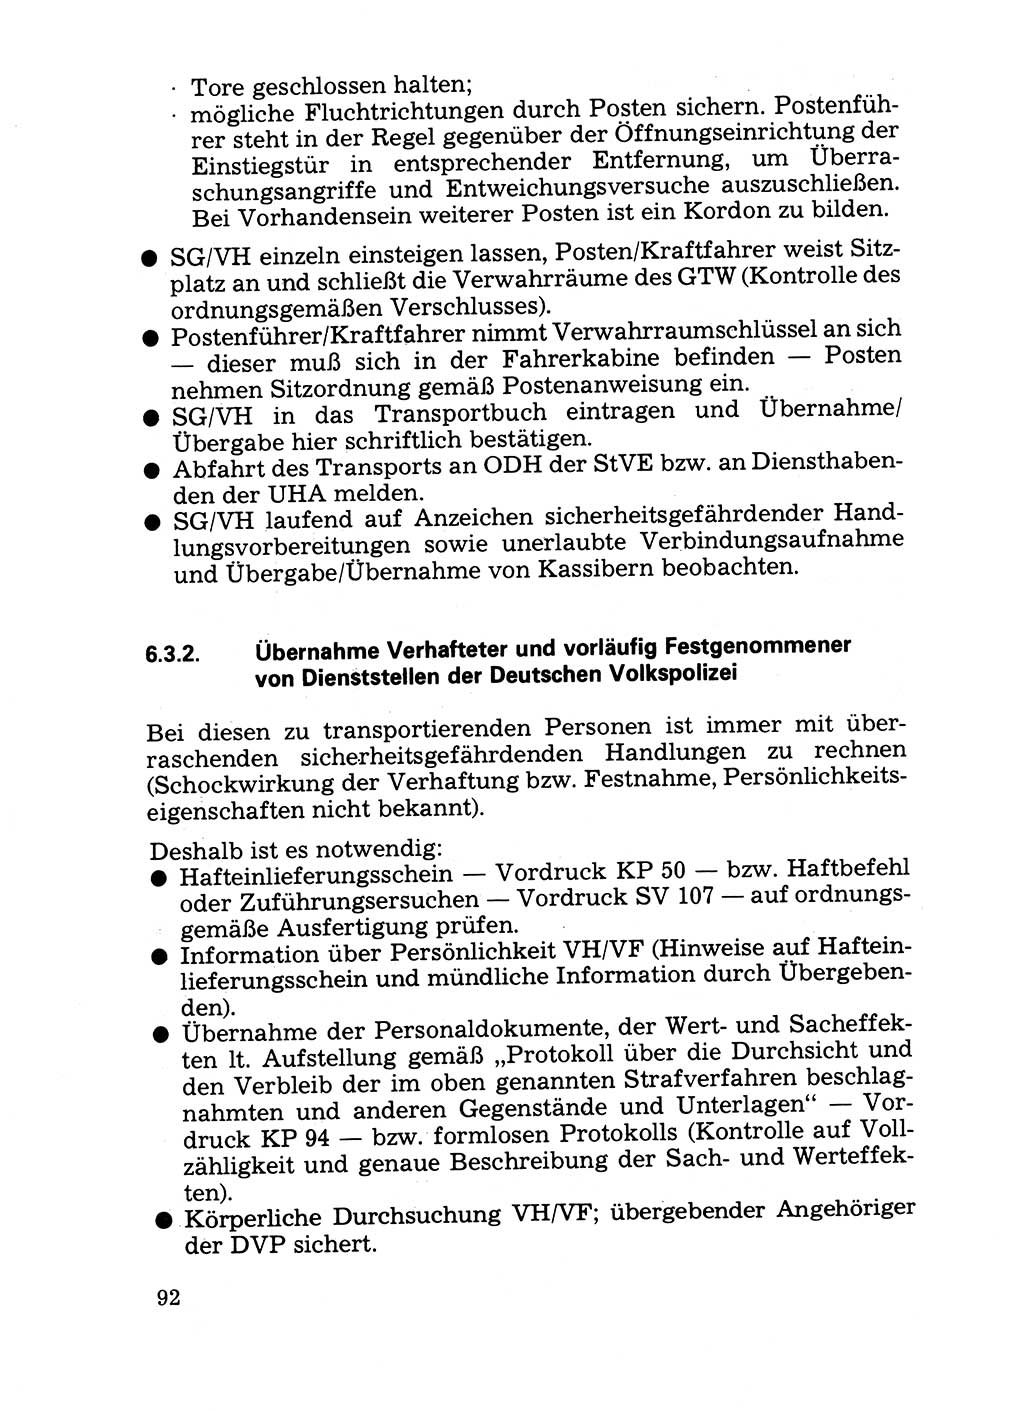 Handbuch für operative Dienste, Abteilung Strafvollzug (SV) [Ministerium des Innern (MdI) Deutsche Demokratische Republik (DDR)] 1981, Seite 92 (Hb. op. D. Abt. SV MdI DDR 1981, S. 92)